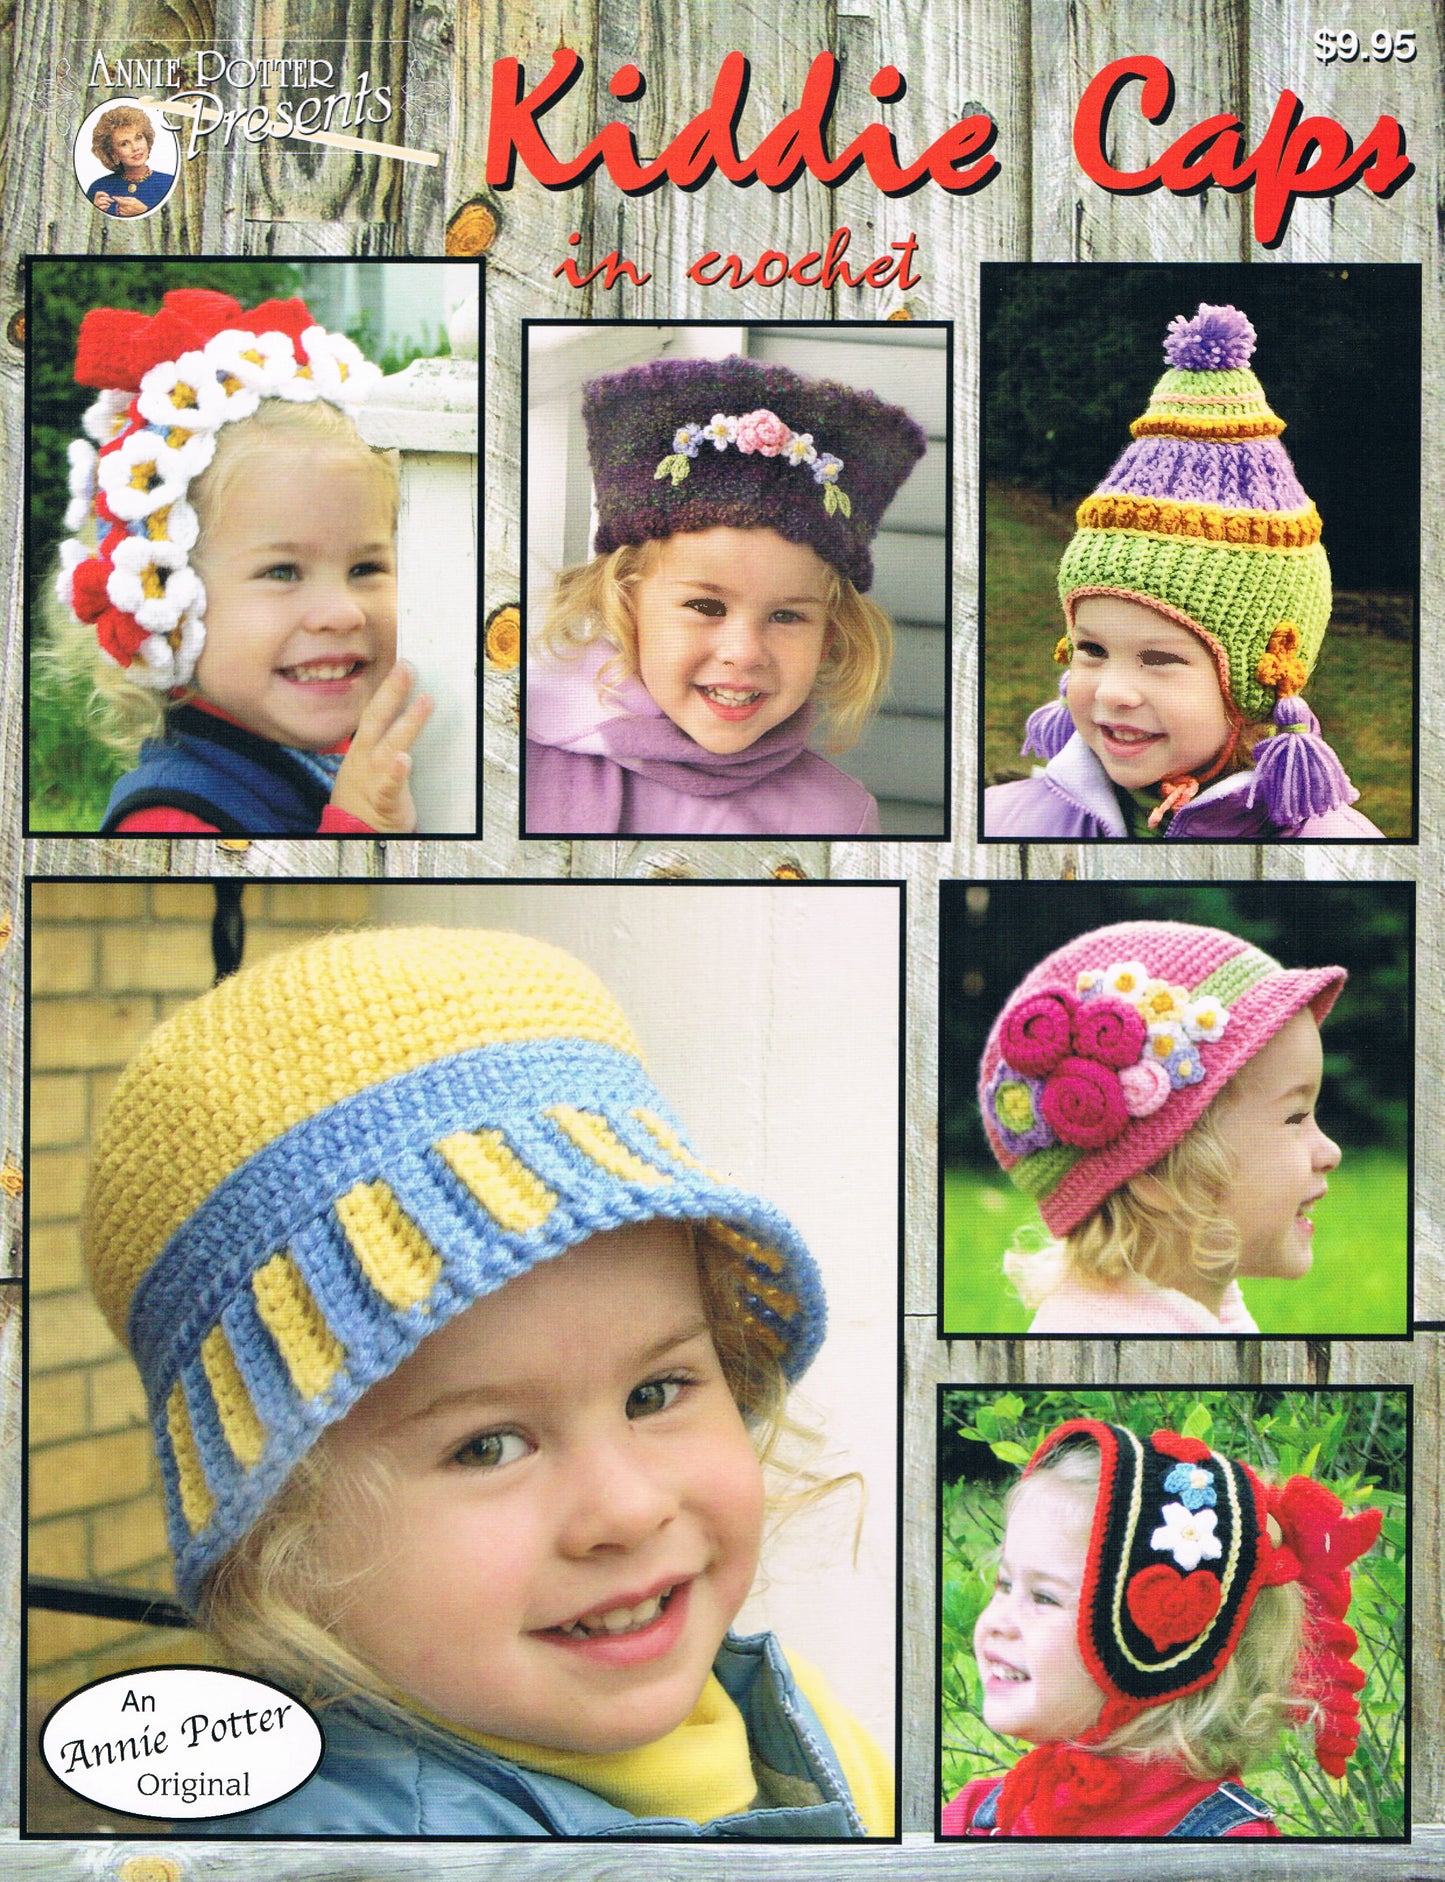 Kiddy Caps crochet kid hats in Crochet